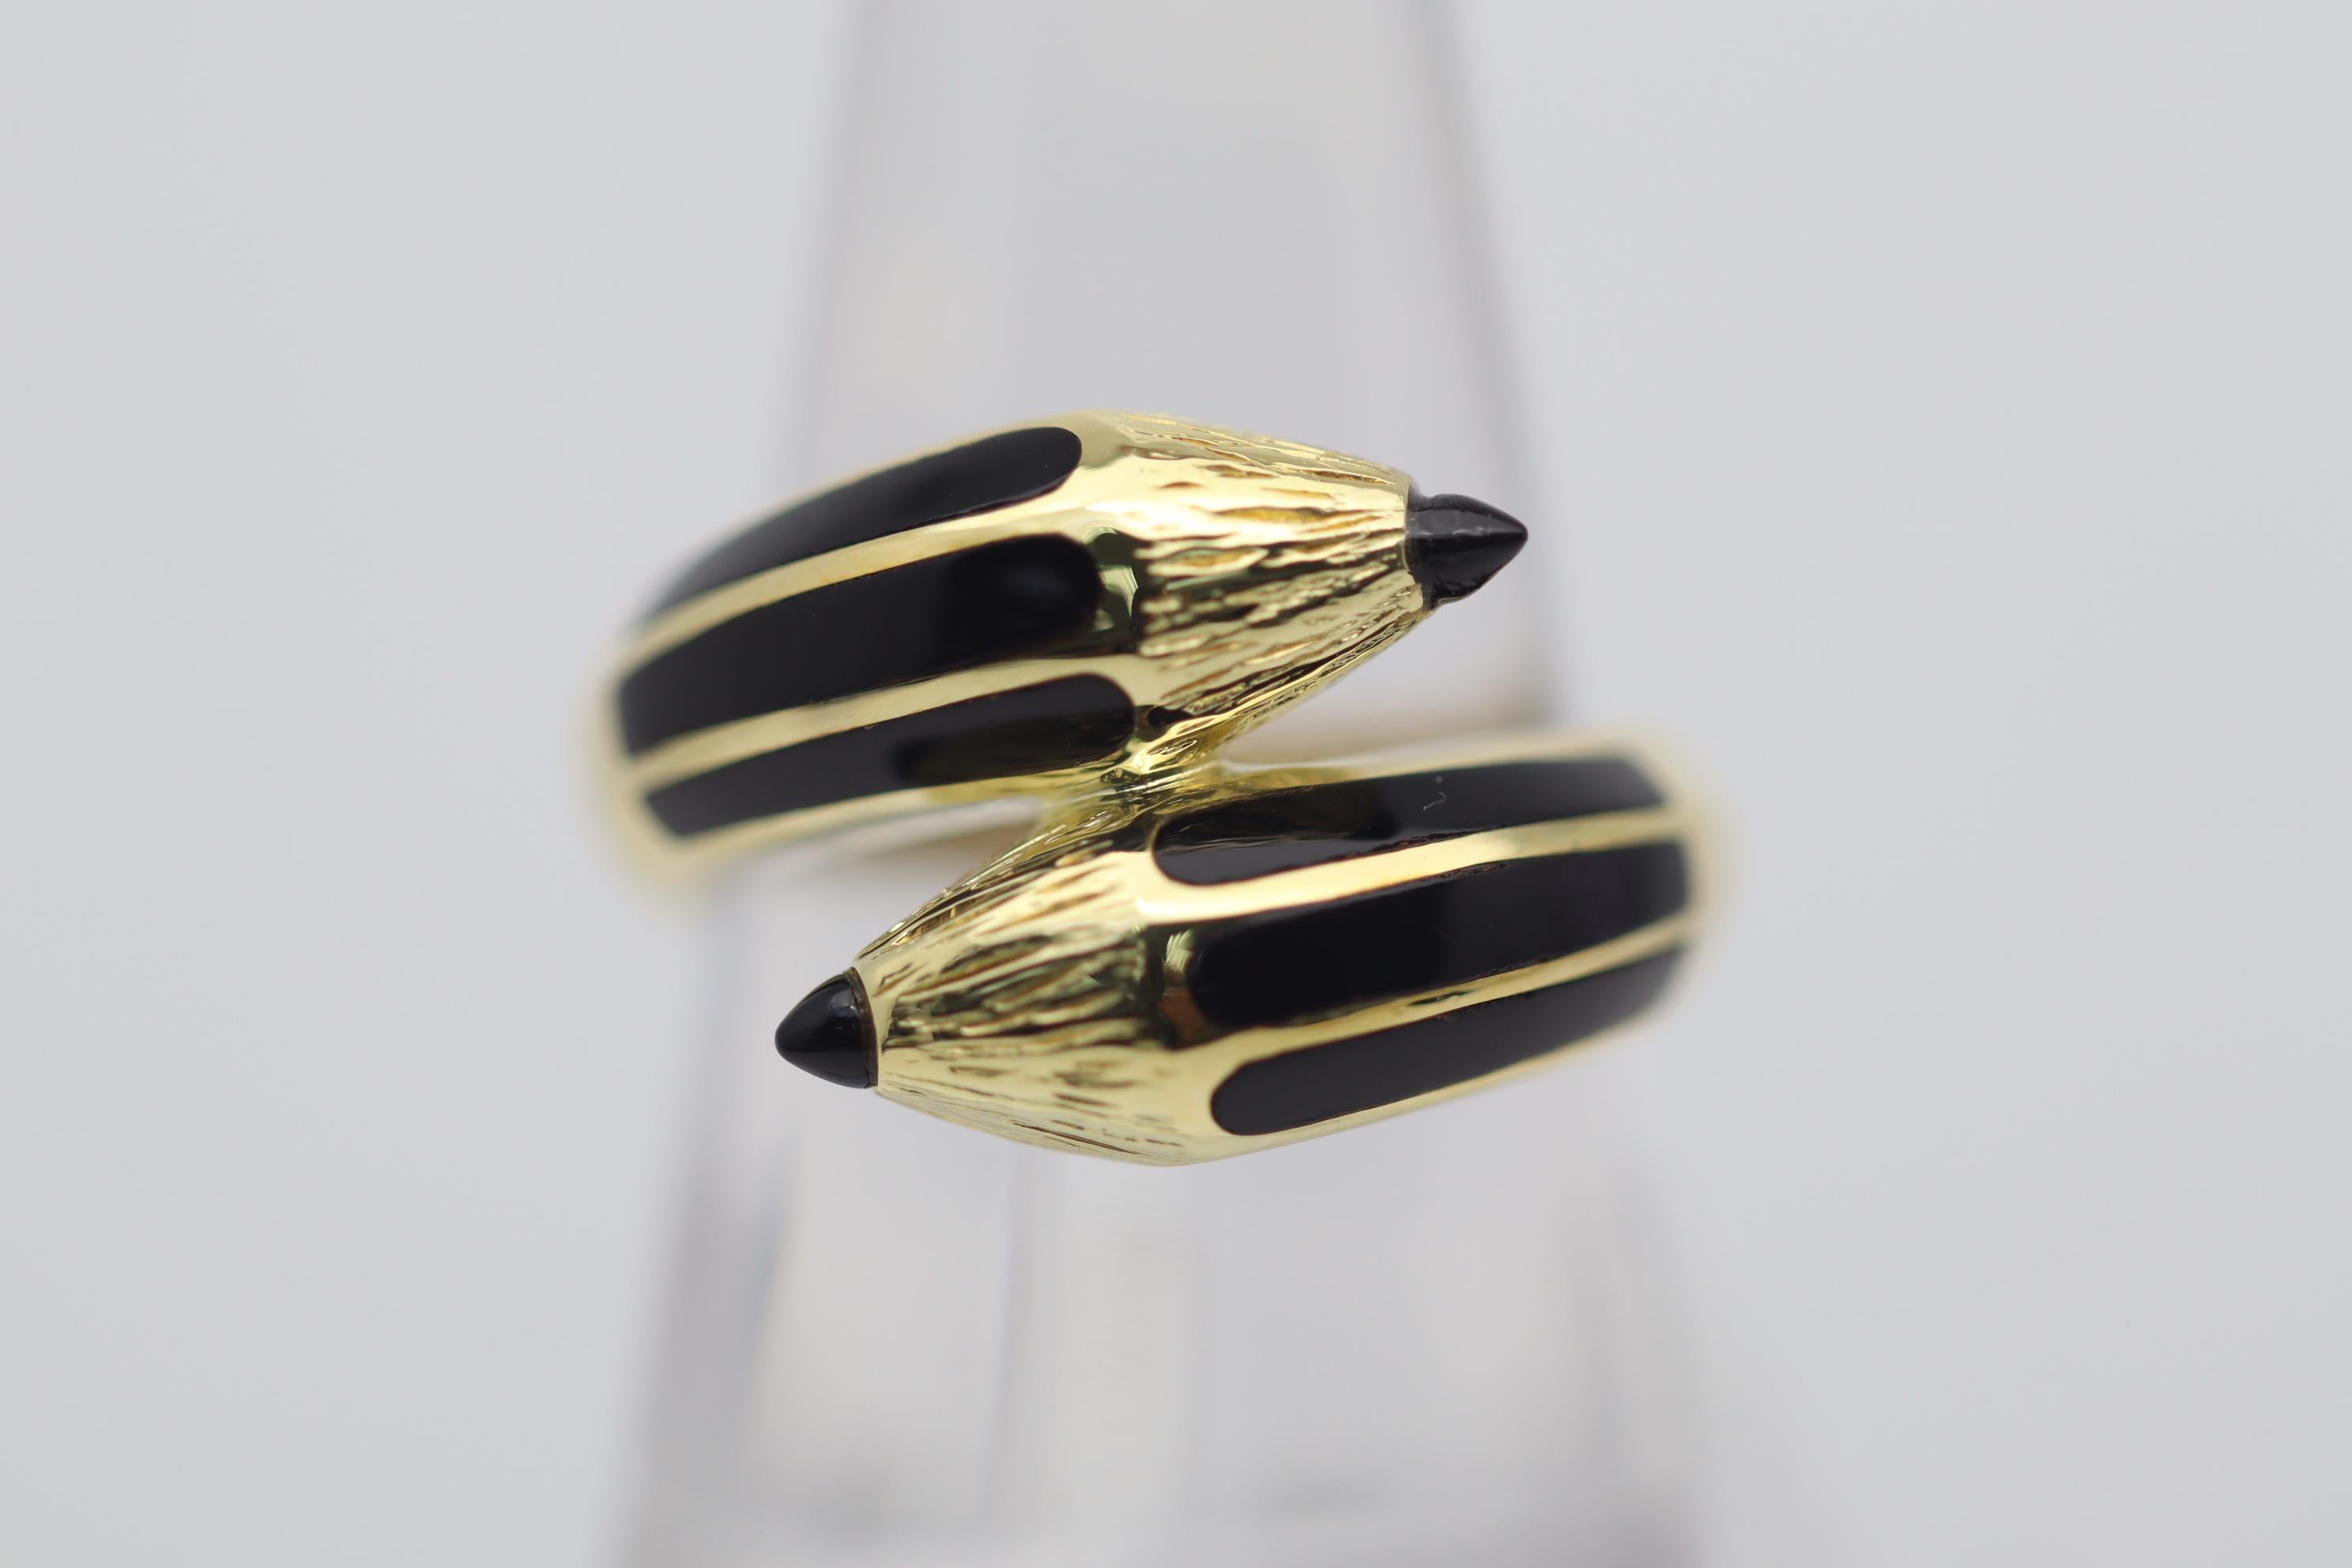 Ein süßer, lustiger und stilvoller Ring in Form eines Bleistifts mit zwei Enden! Er ist fein aus 18 Karat Gelbgold gefertigt und mit handgeschnitzten Details versehen, die ihn lebensecht erscheinen lassen. Außerdem ist der Bleistift mit schwarzen